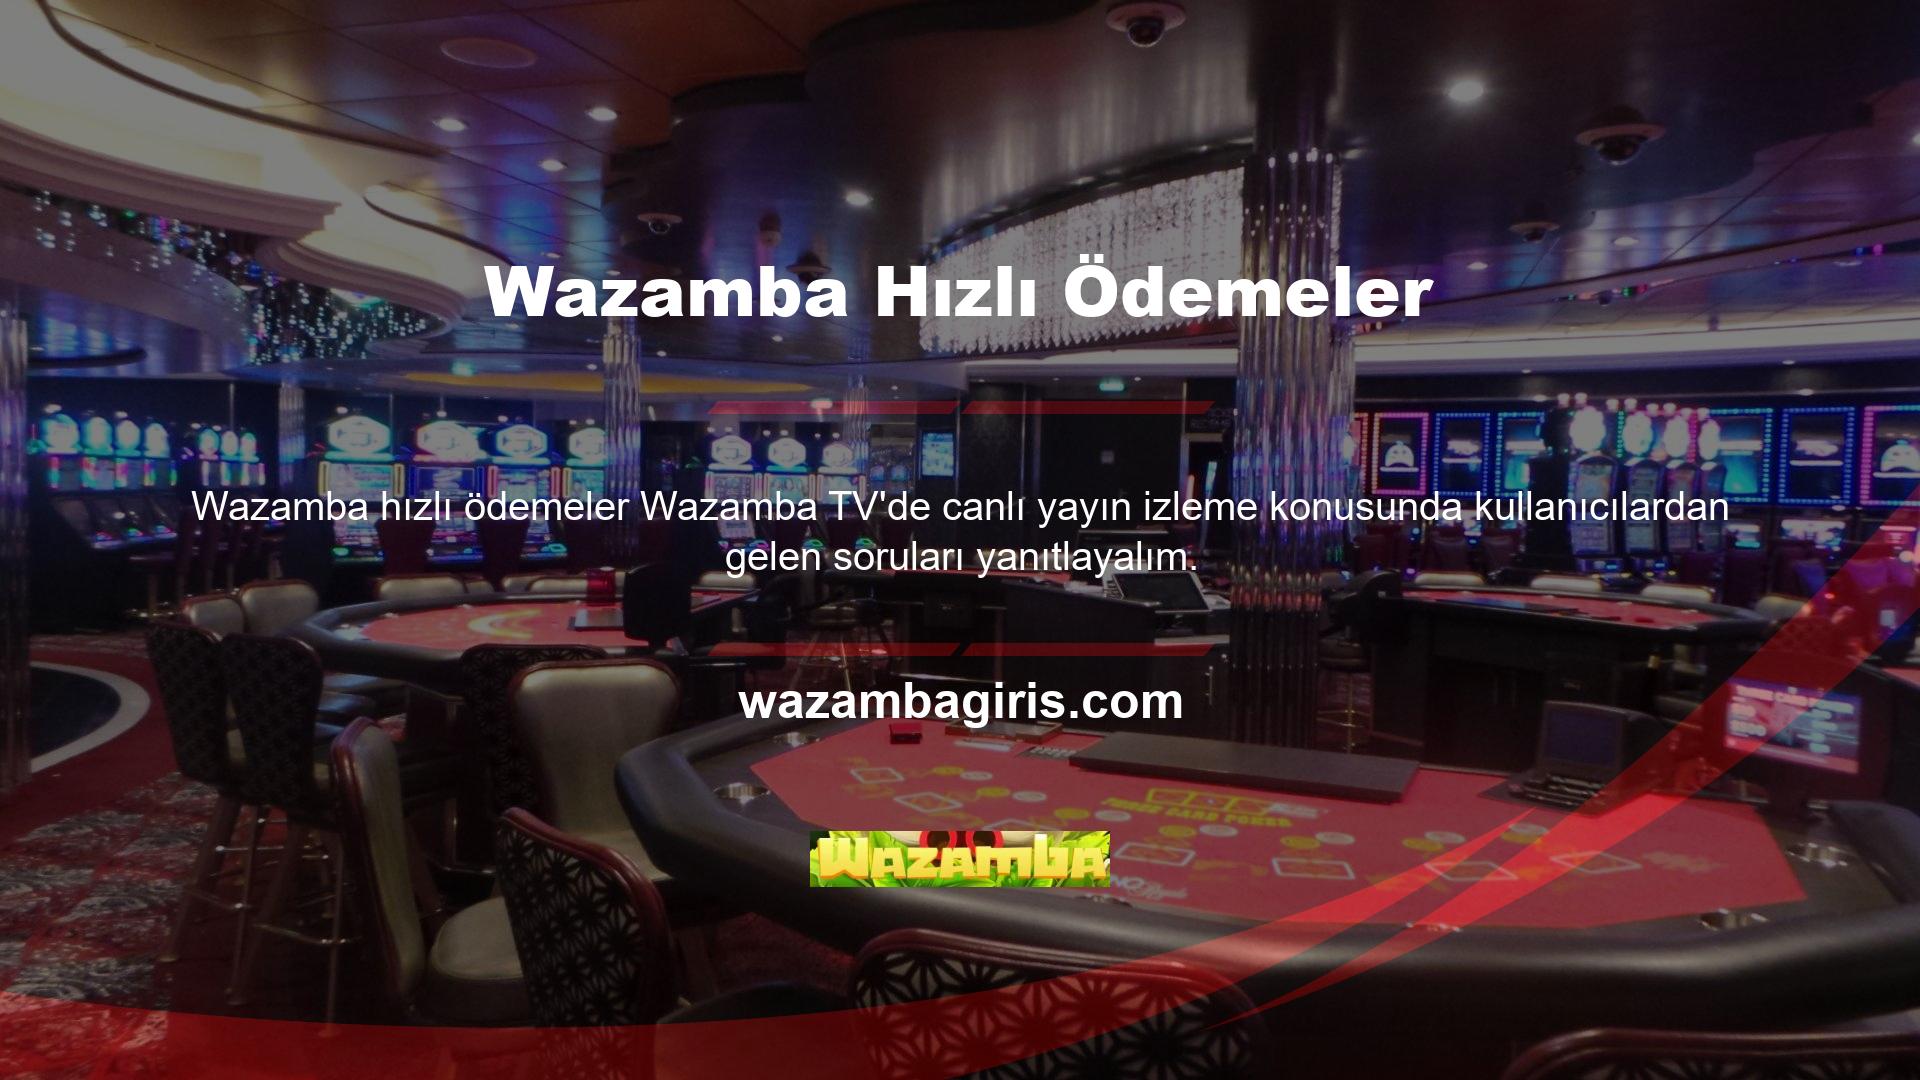 Öncelikle Wazamba TV'de maç izlemek ücretsizdir